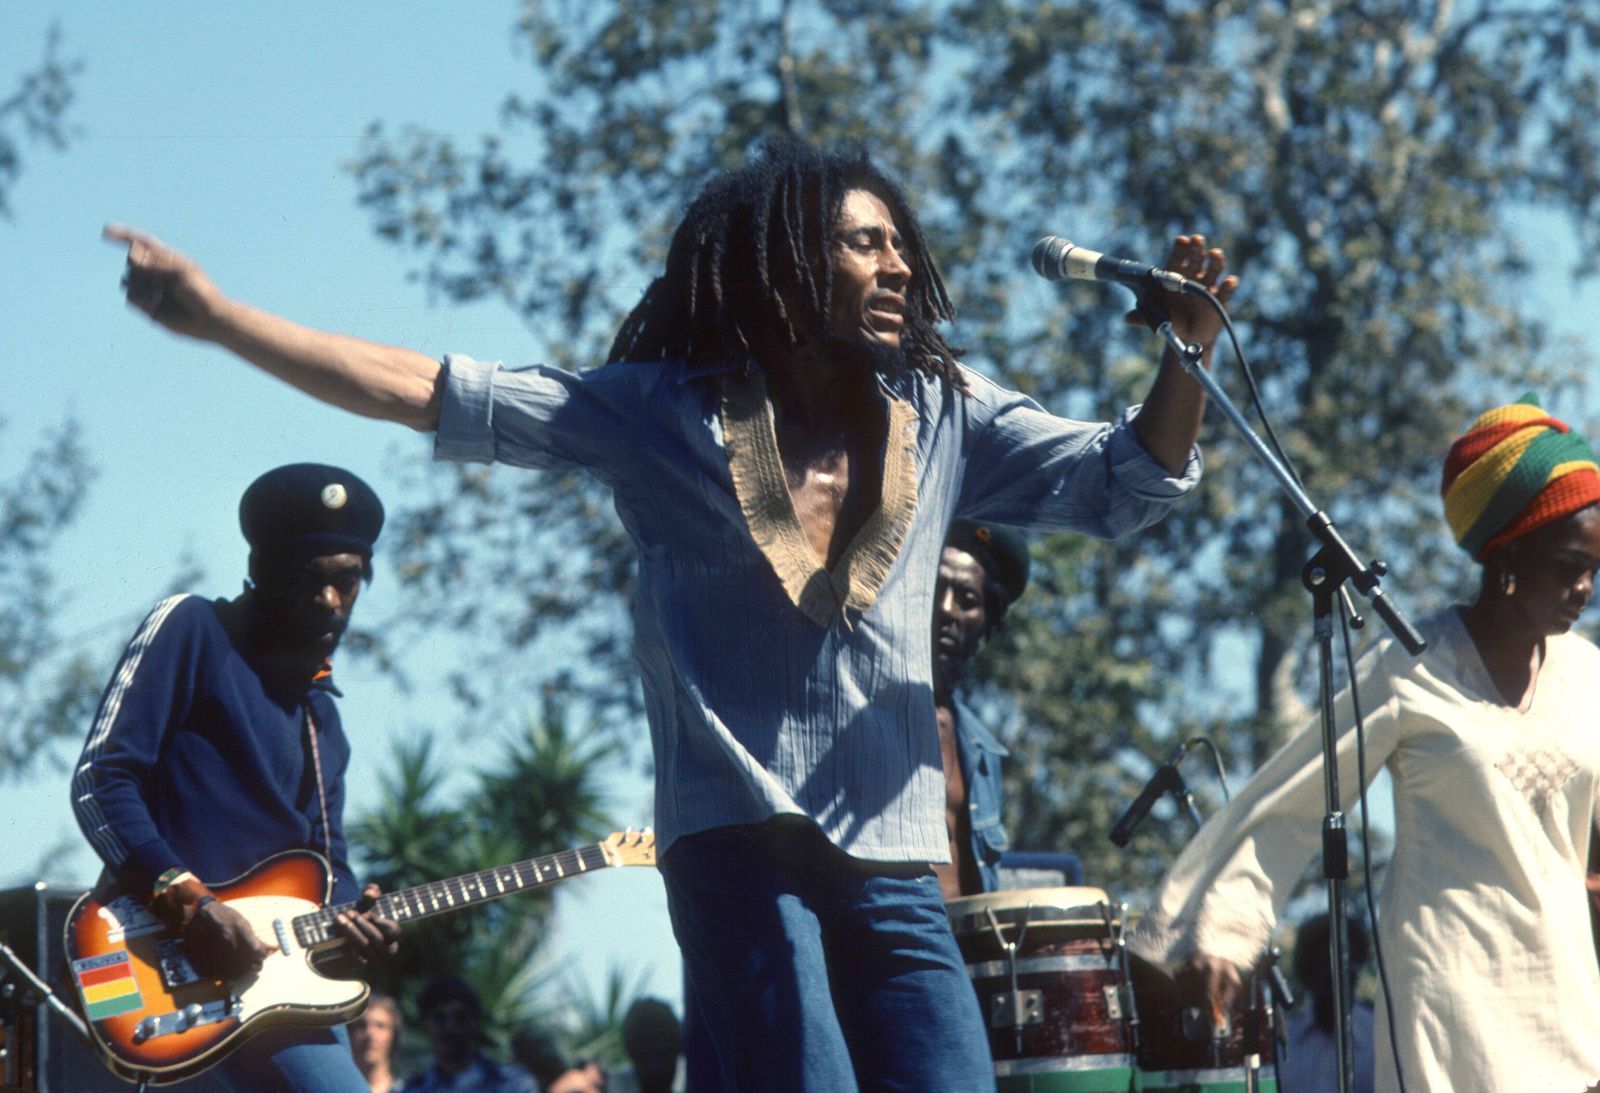 SANTA BARBARA, CA - MAY 31: Jamaican reggae musician, singer, songwriter and cultural icon Bob Marley performing with his band, The Wailers, at the Santa Barbara County Bowl in Santa Barbara, CA on May 31, 1976. PUBLICATIONxNOTxINxUSA Copyright: xJeffreyxMayerx/xRockxNegativesx/xMediaPunchx